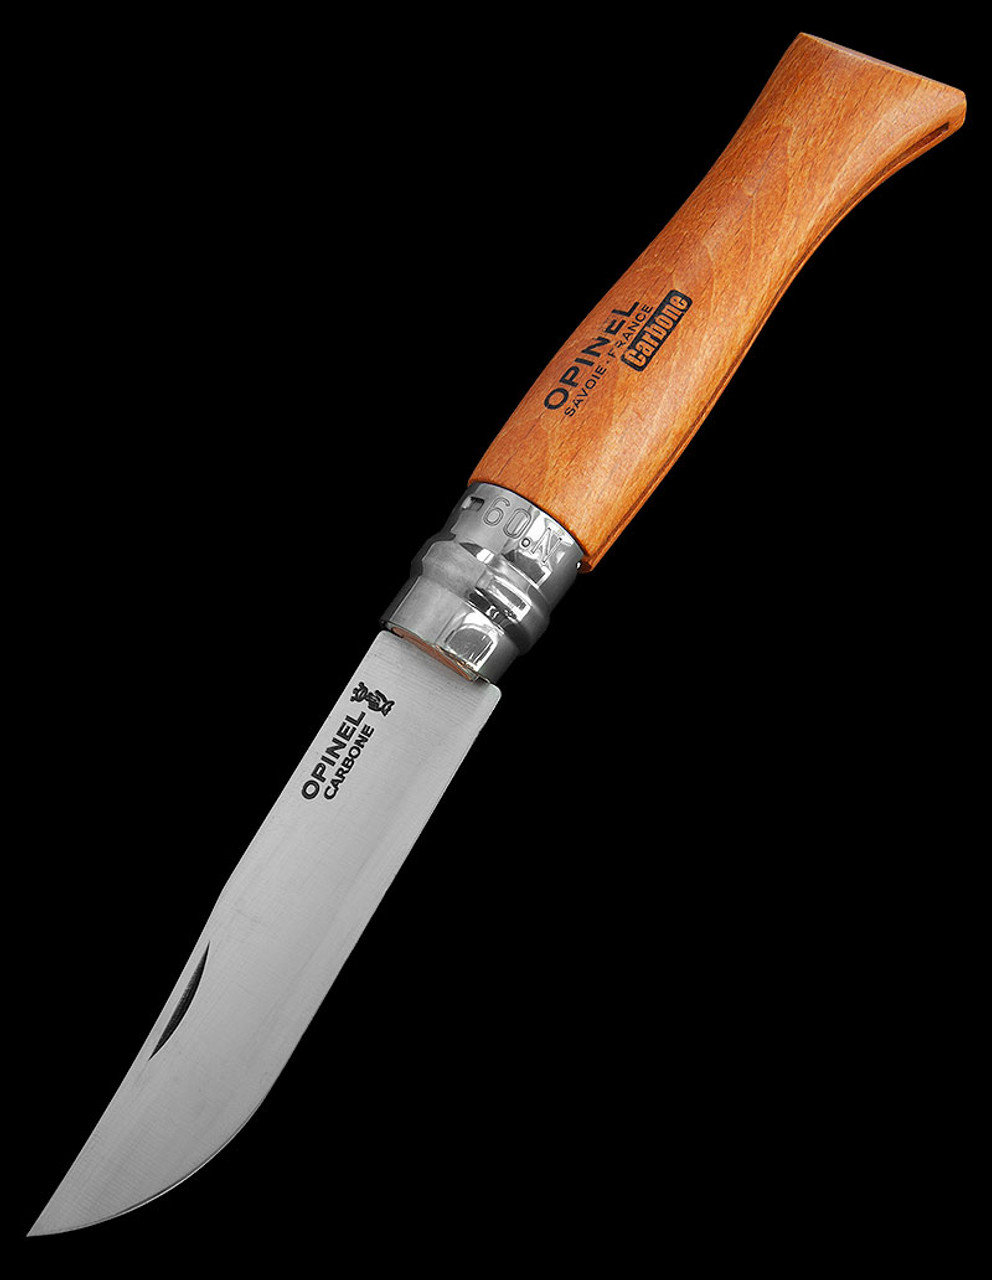 Opinel No. 12 pocket knife, carbon steel, blade length 12 cm